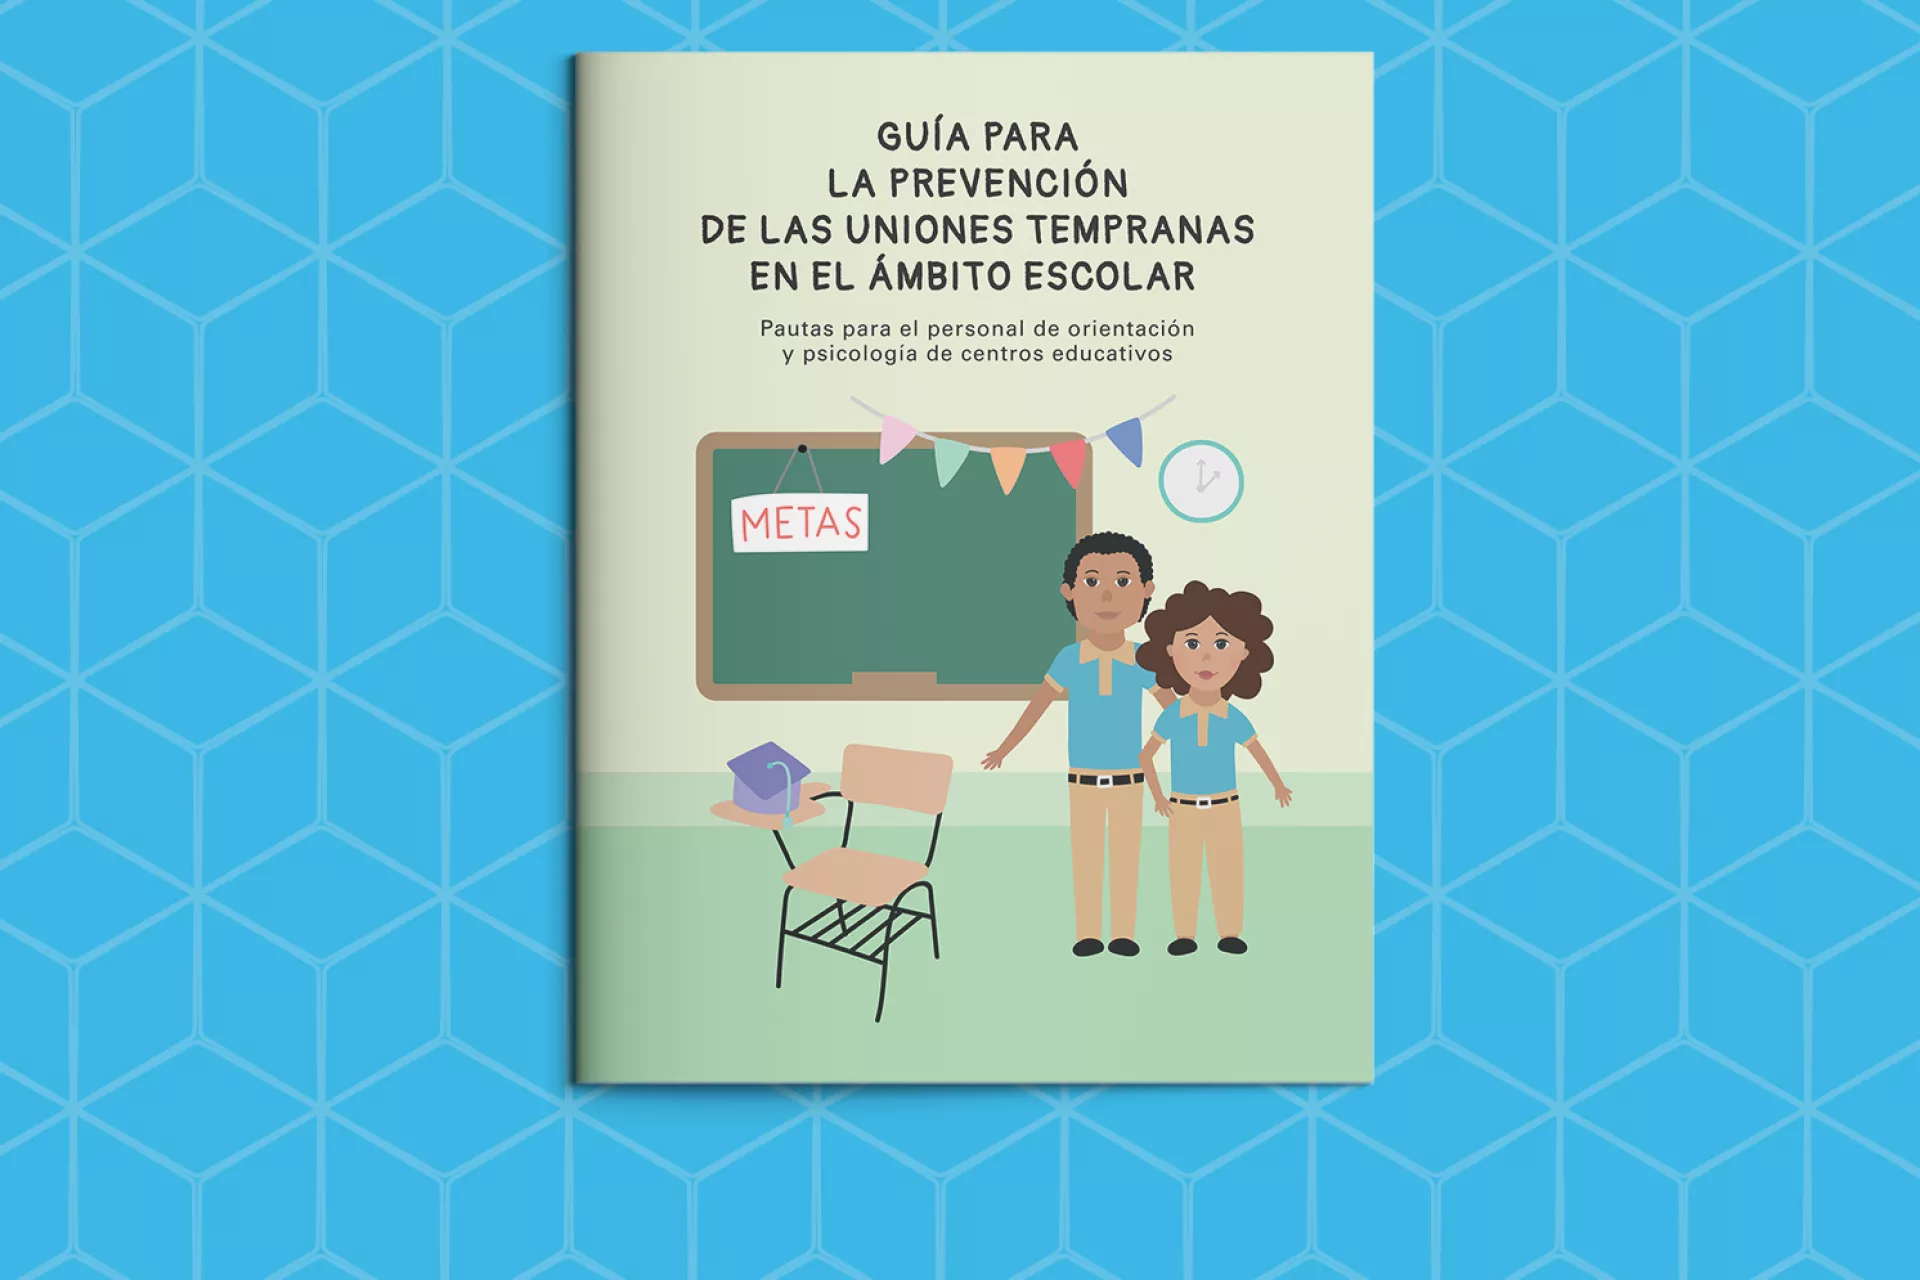 Guia para orientadores escolares en prevencion uniones tempranas - COVER